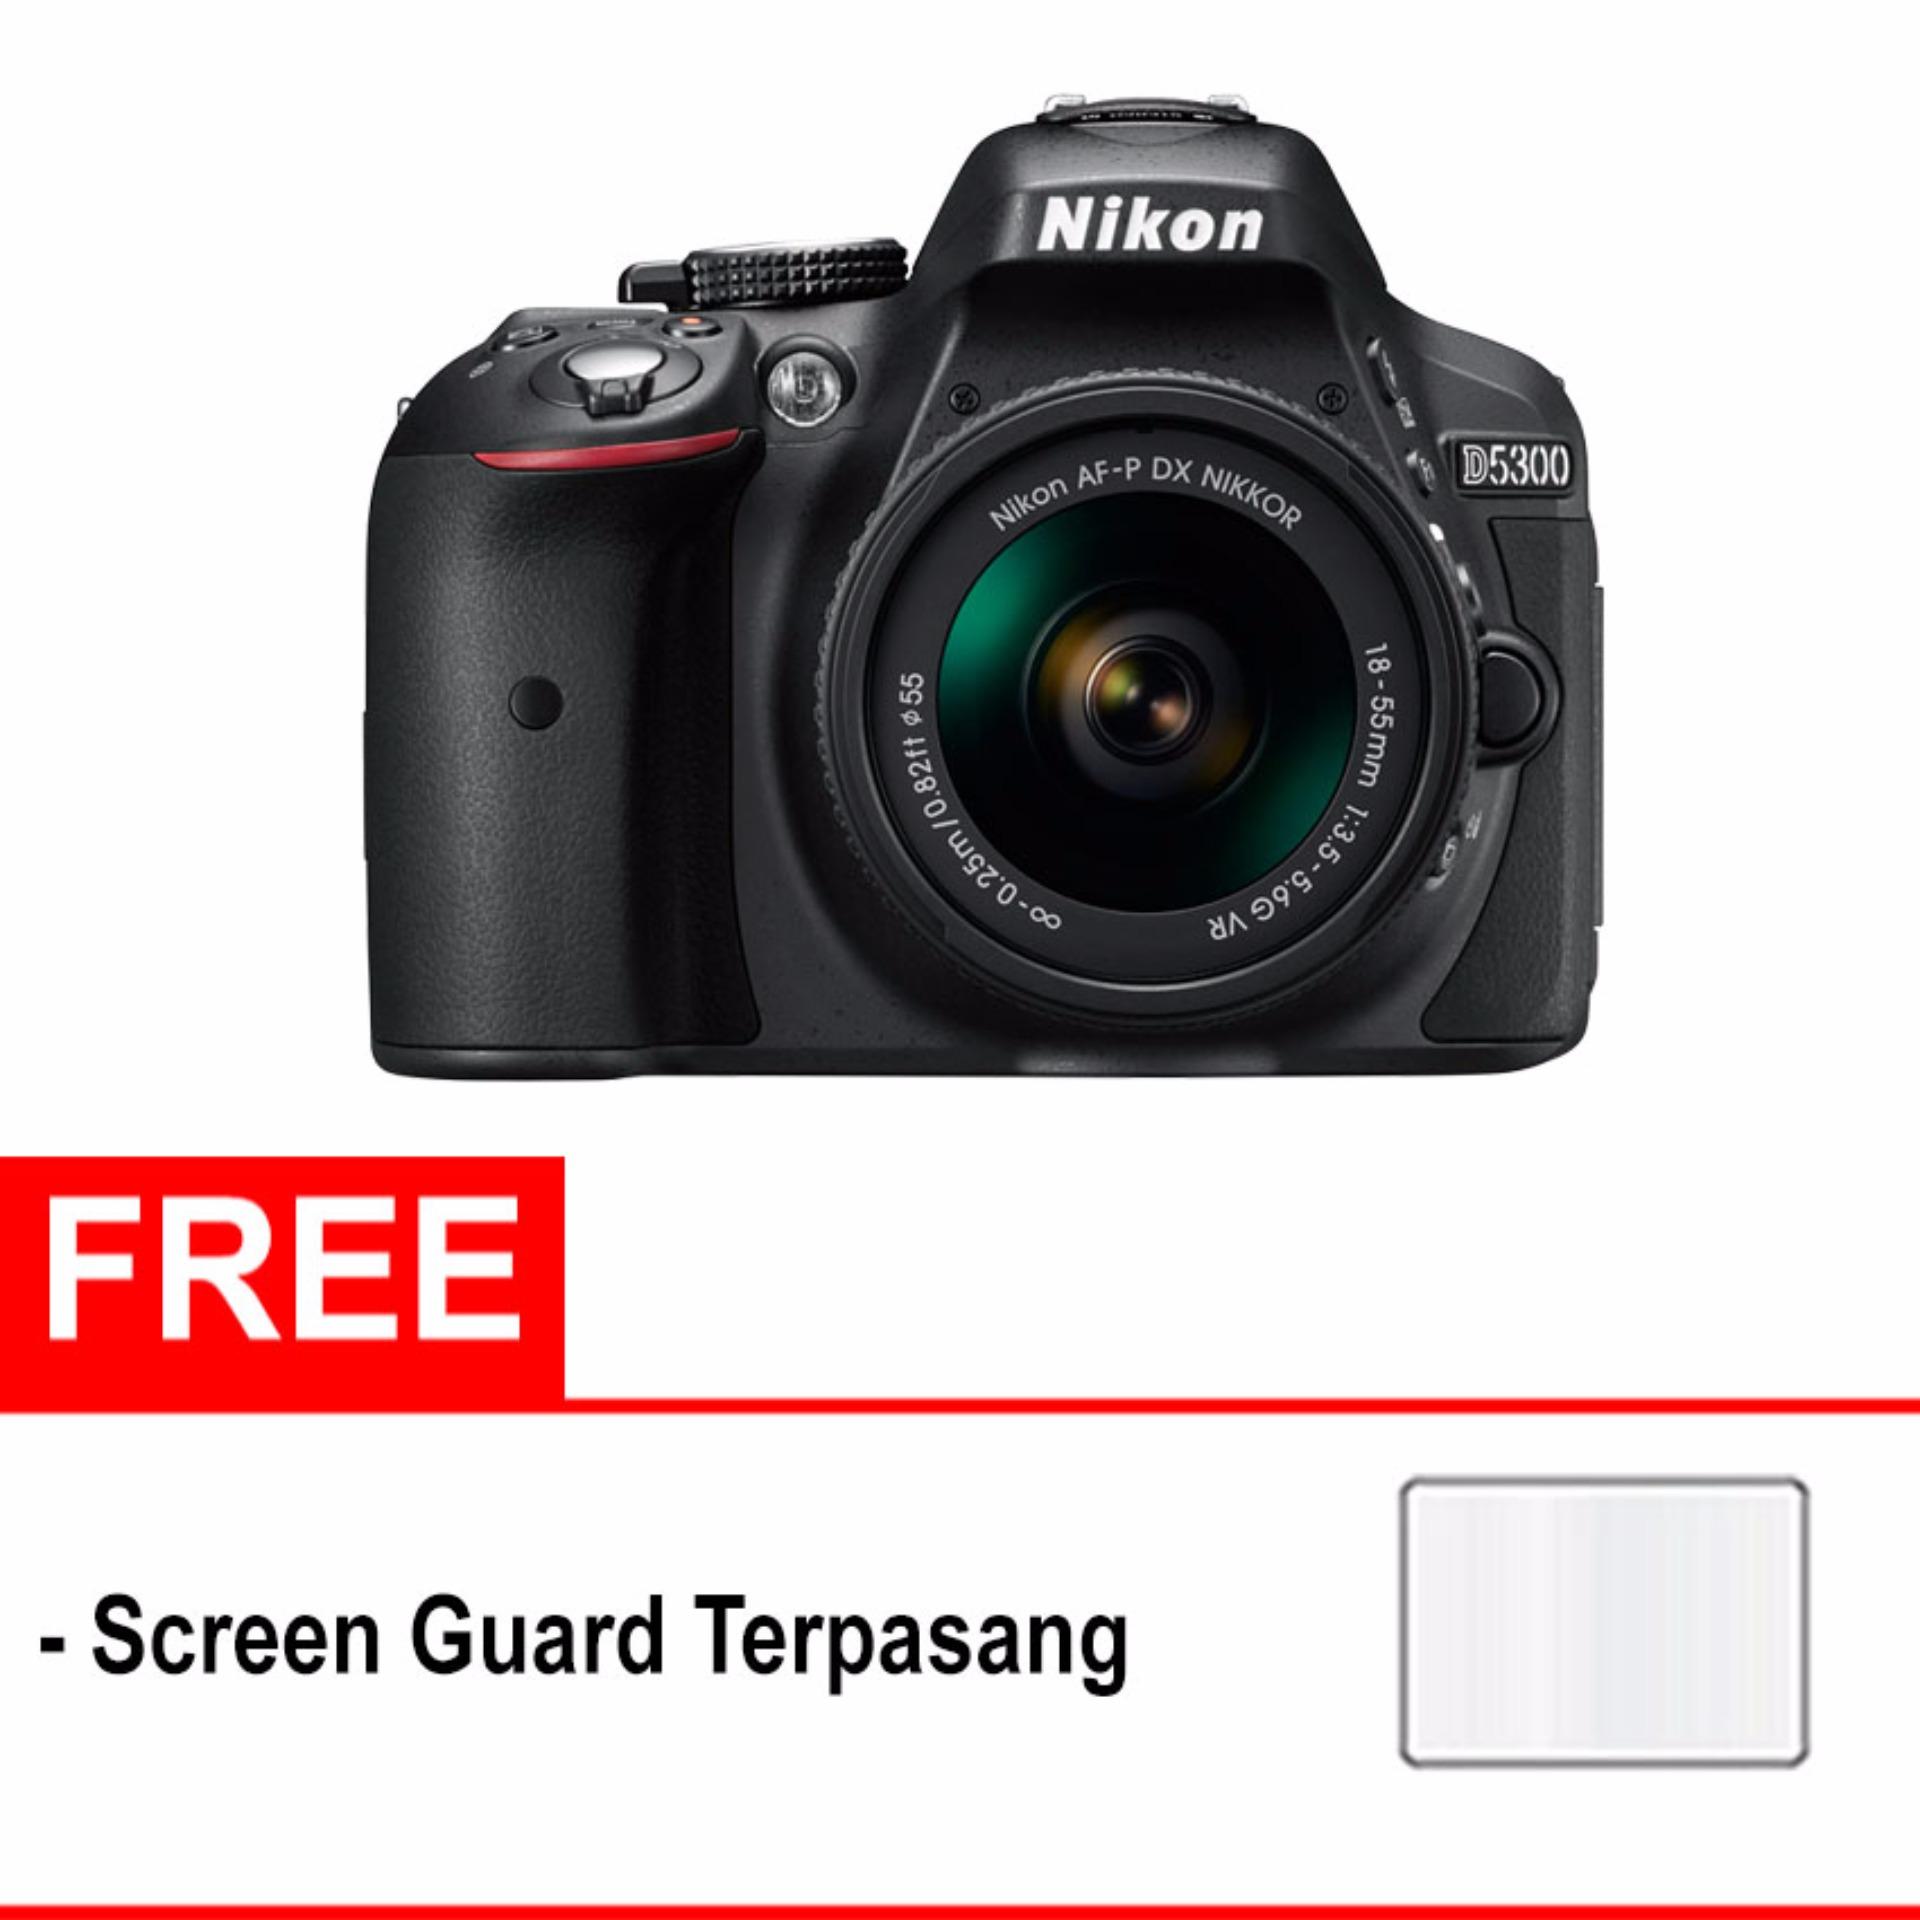 NIKON D5300 + AF-P DX NIKKOR 18-55mm f/3.5-5.6G VR Kit Lens WiFi - (Free Screenguard Terpasang) 